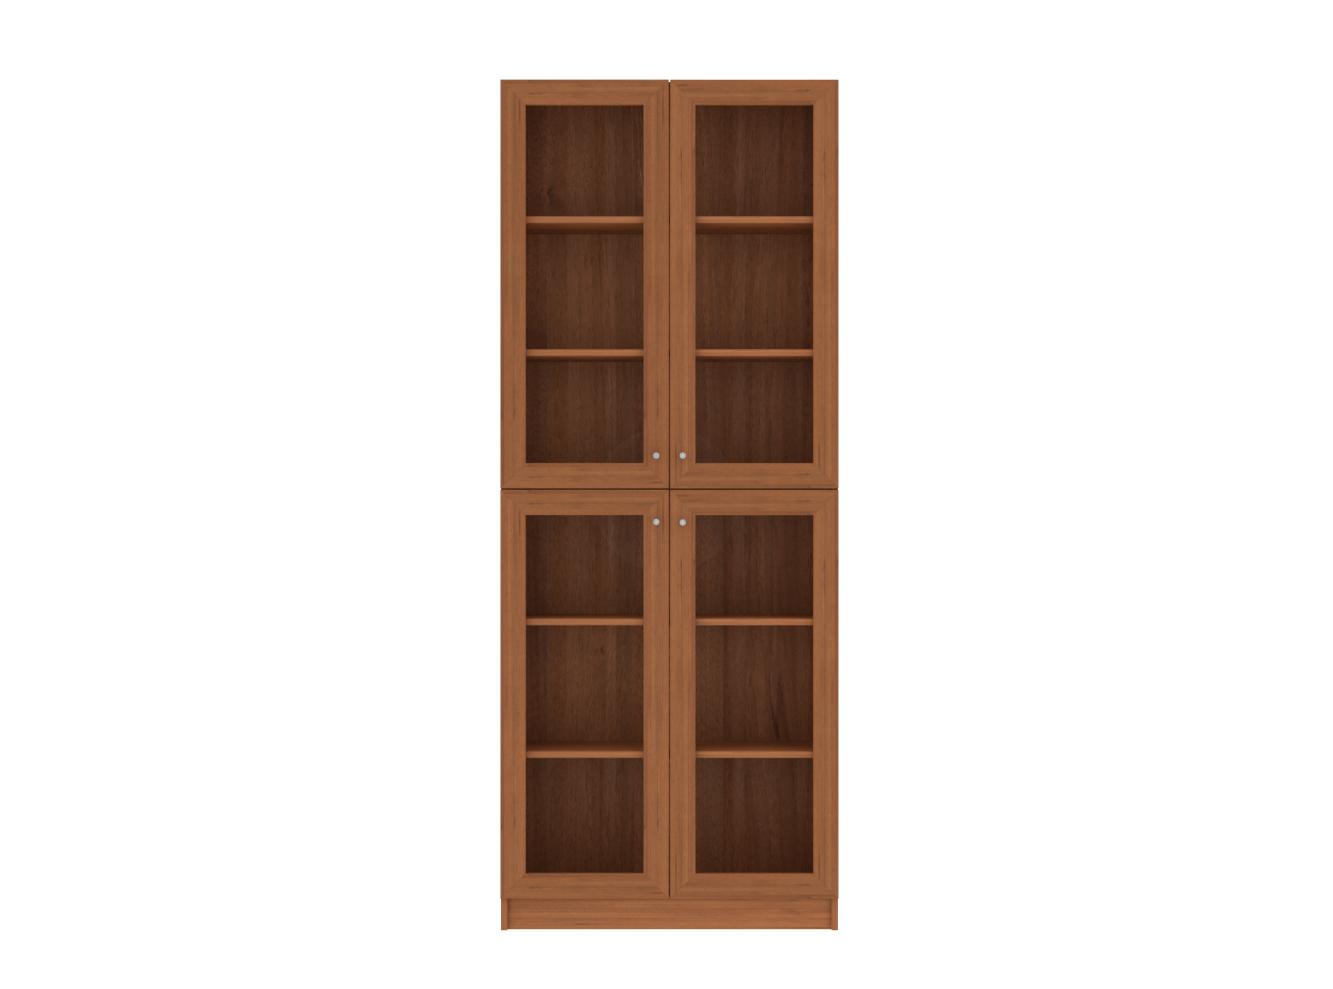 Книжный шкаф Билли 335 walnut guarneri ИКЕА (IKEA) изображение товара